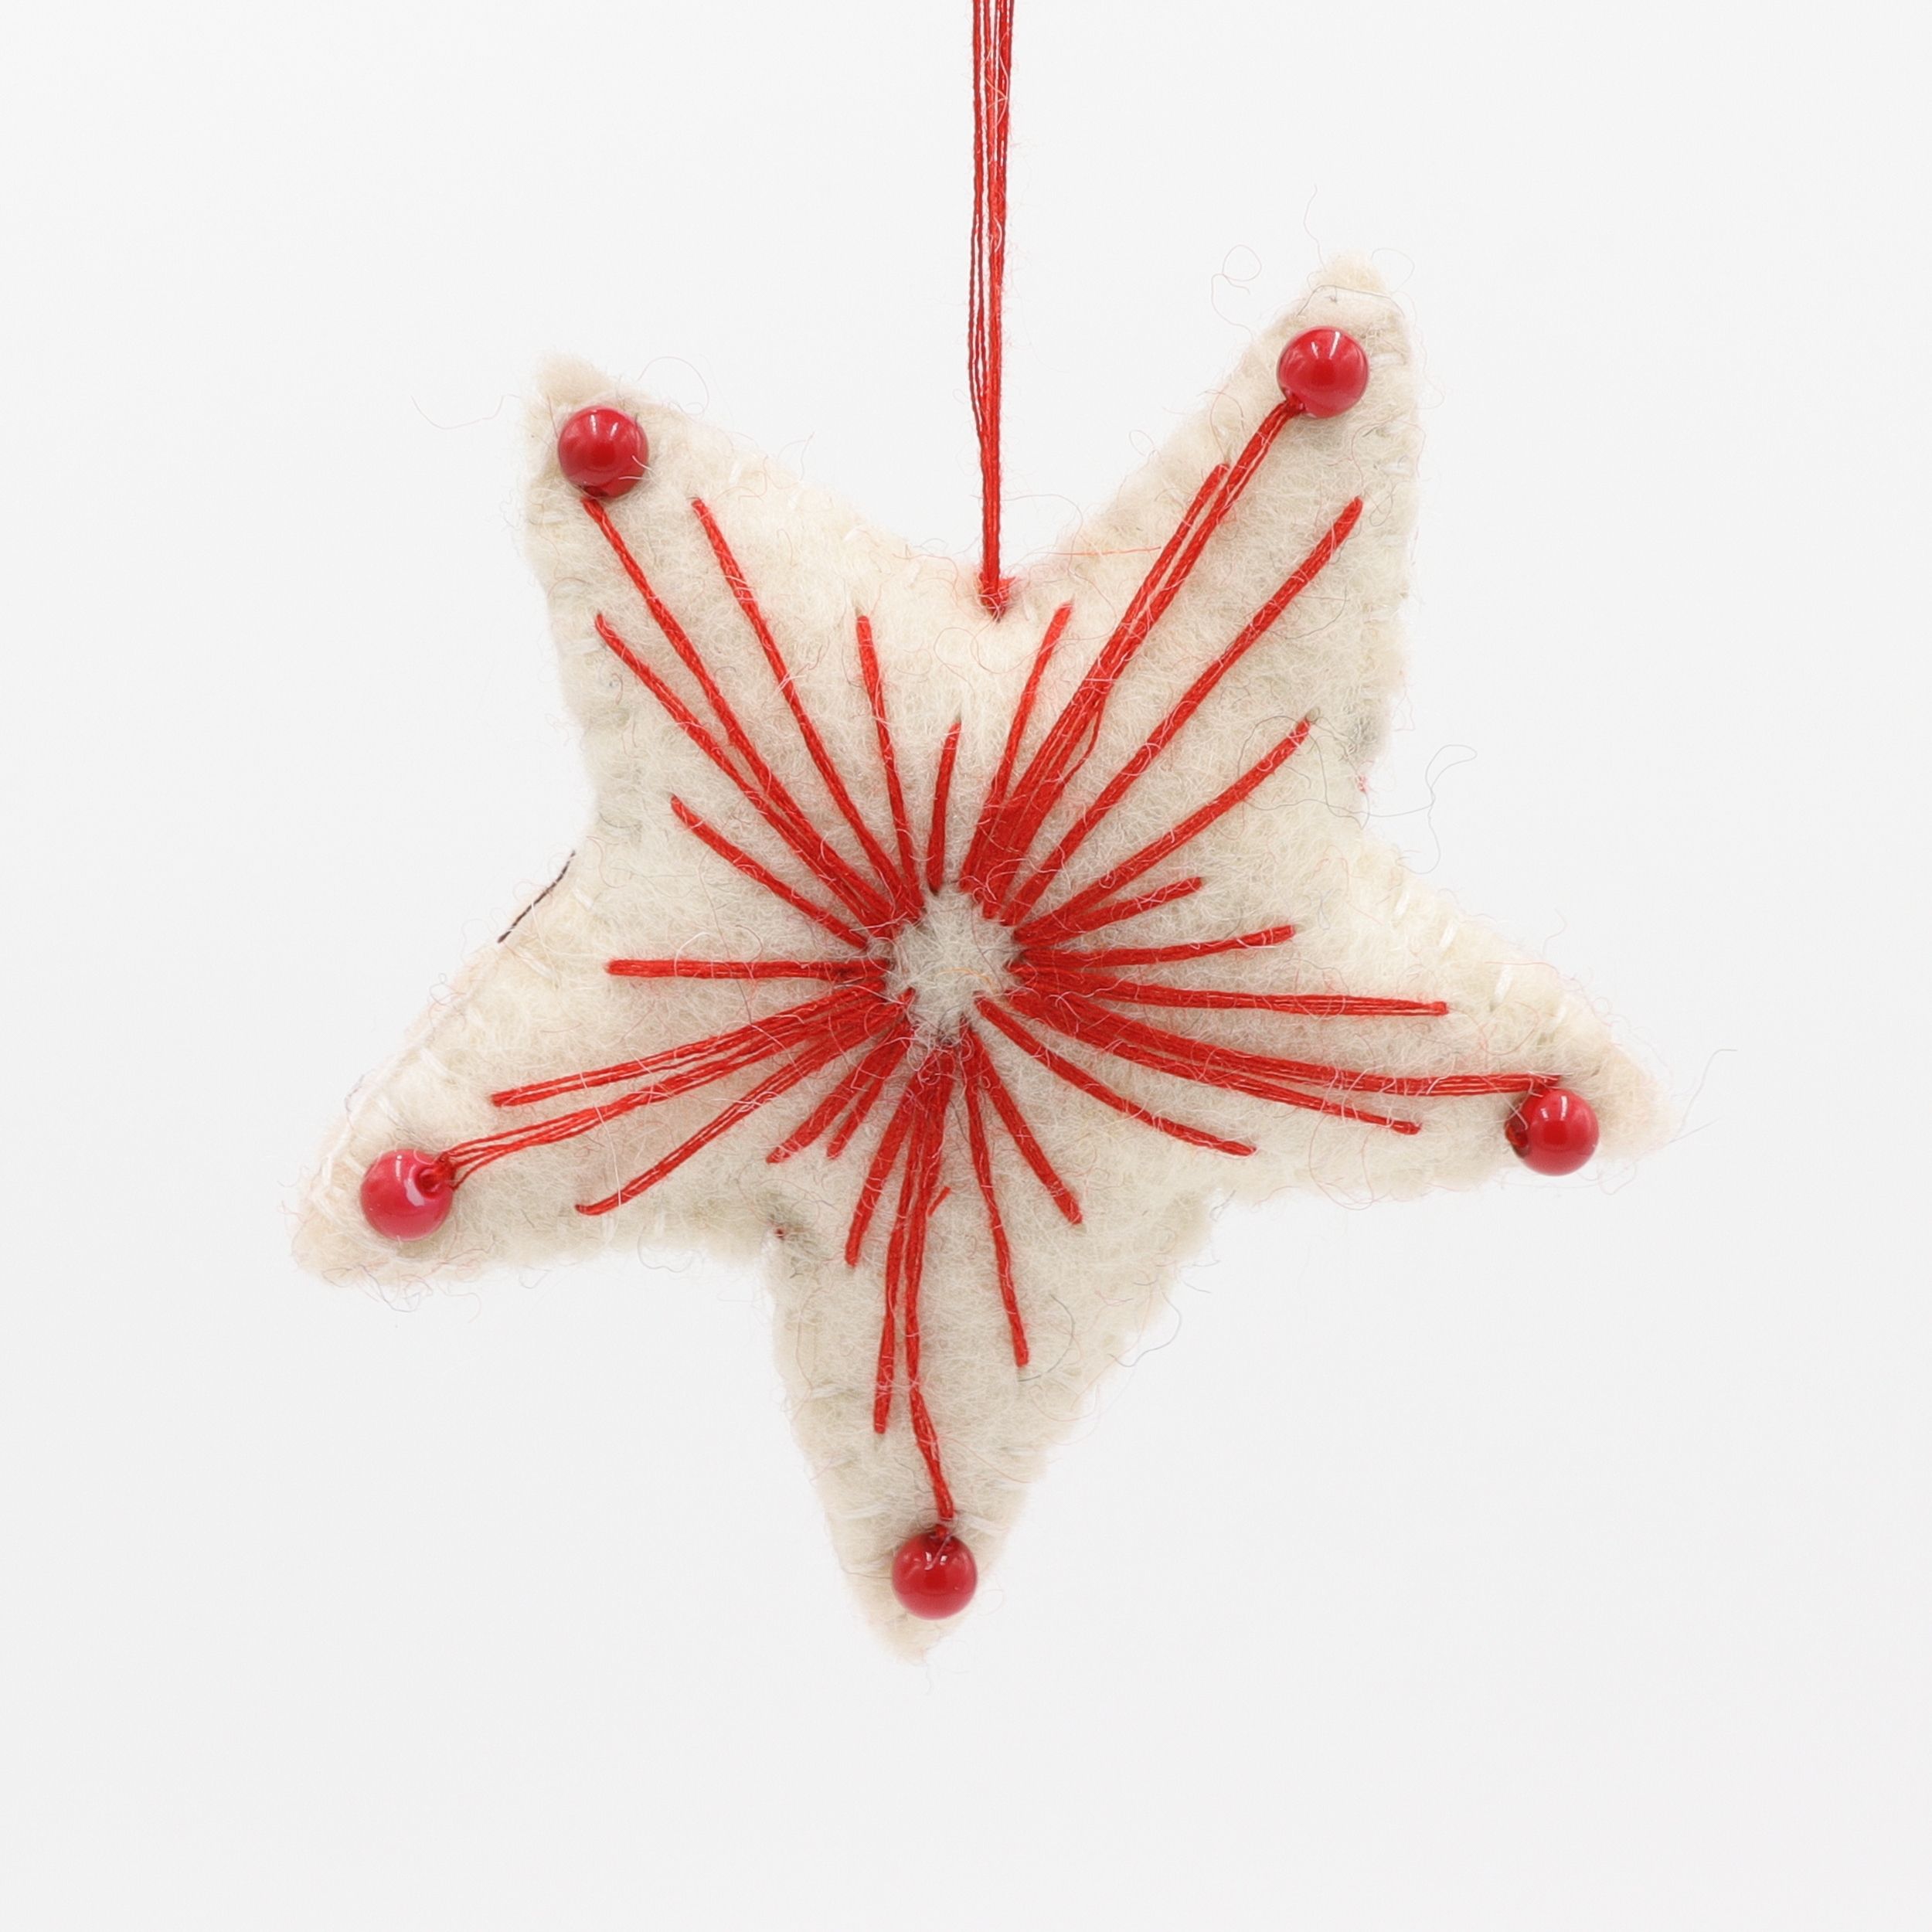 Weihnachtsstern - Stern als Weihnachtsschmuck mit aufgenähten Perlen - Anhänger aus Filz - Geschenkanhänger oder Baumschmuck - echte Handarbeit und fair gehandelt